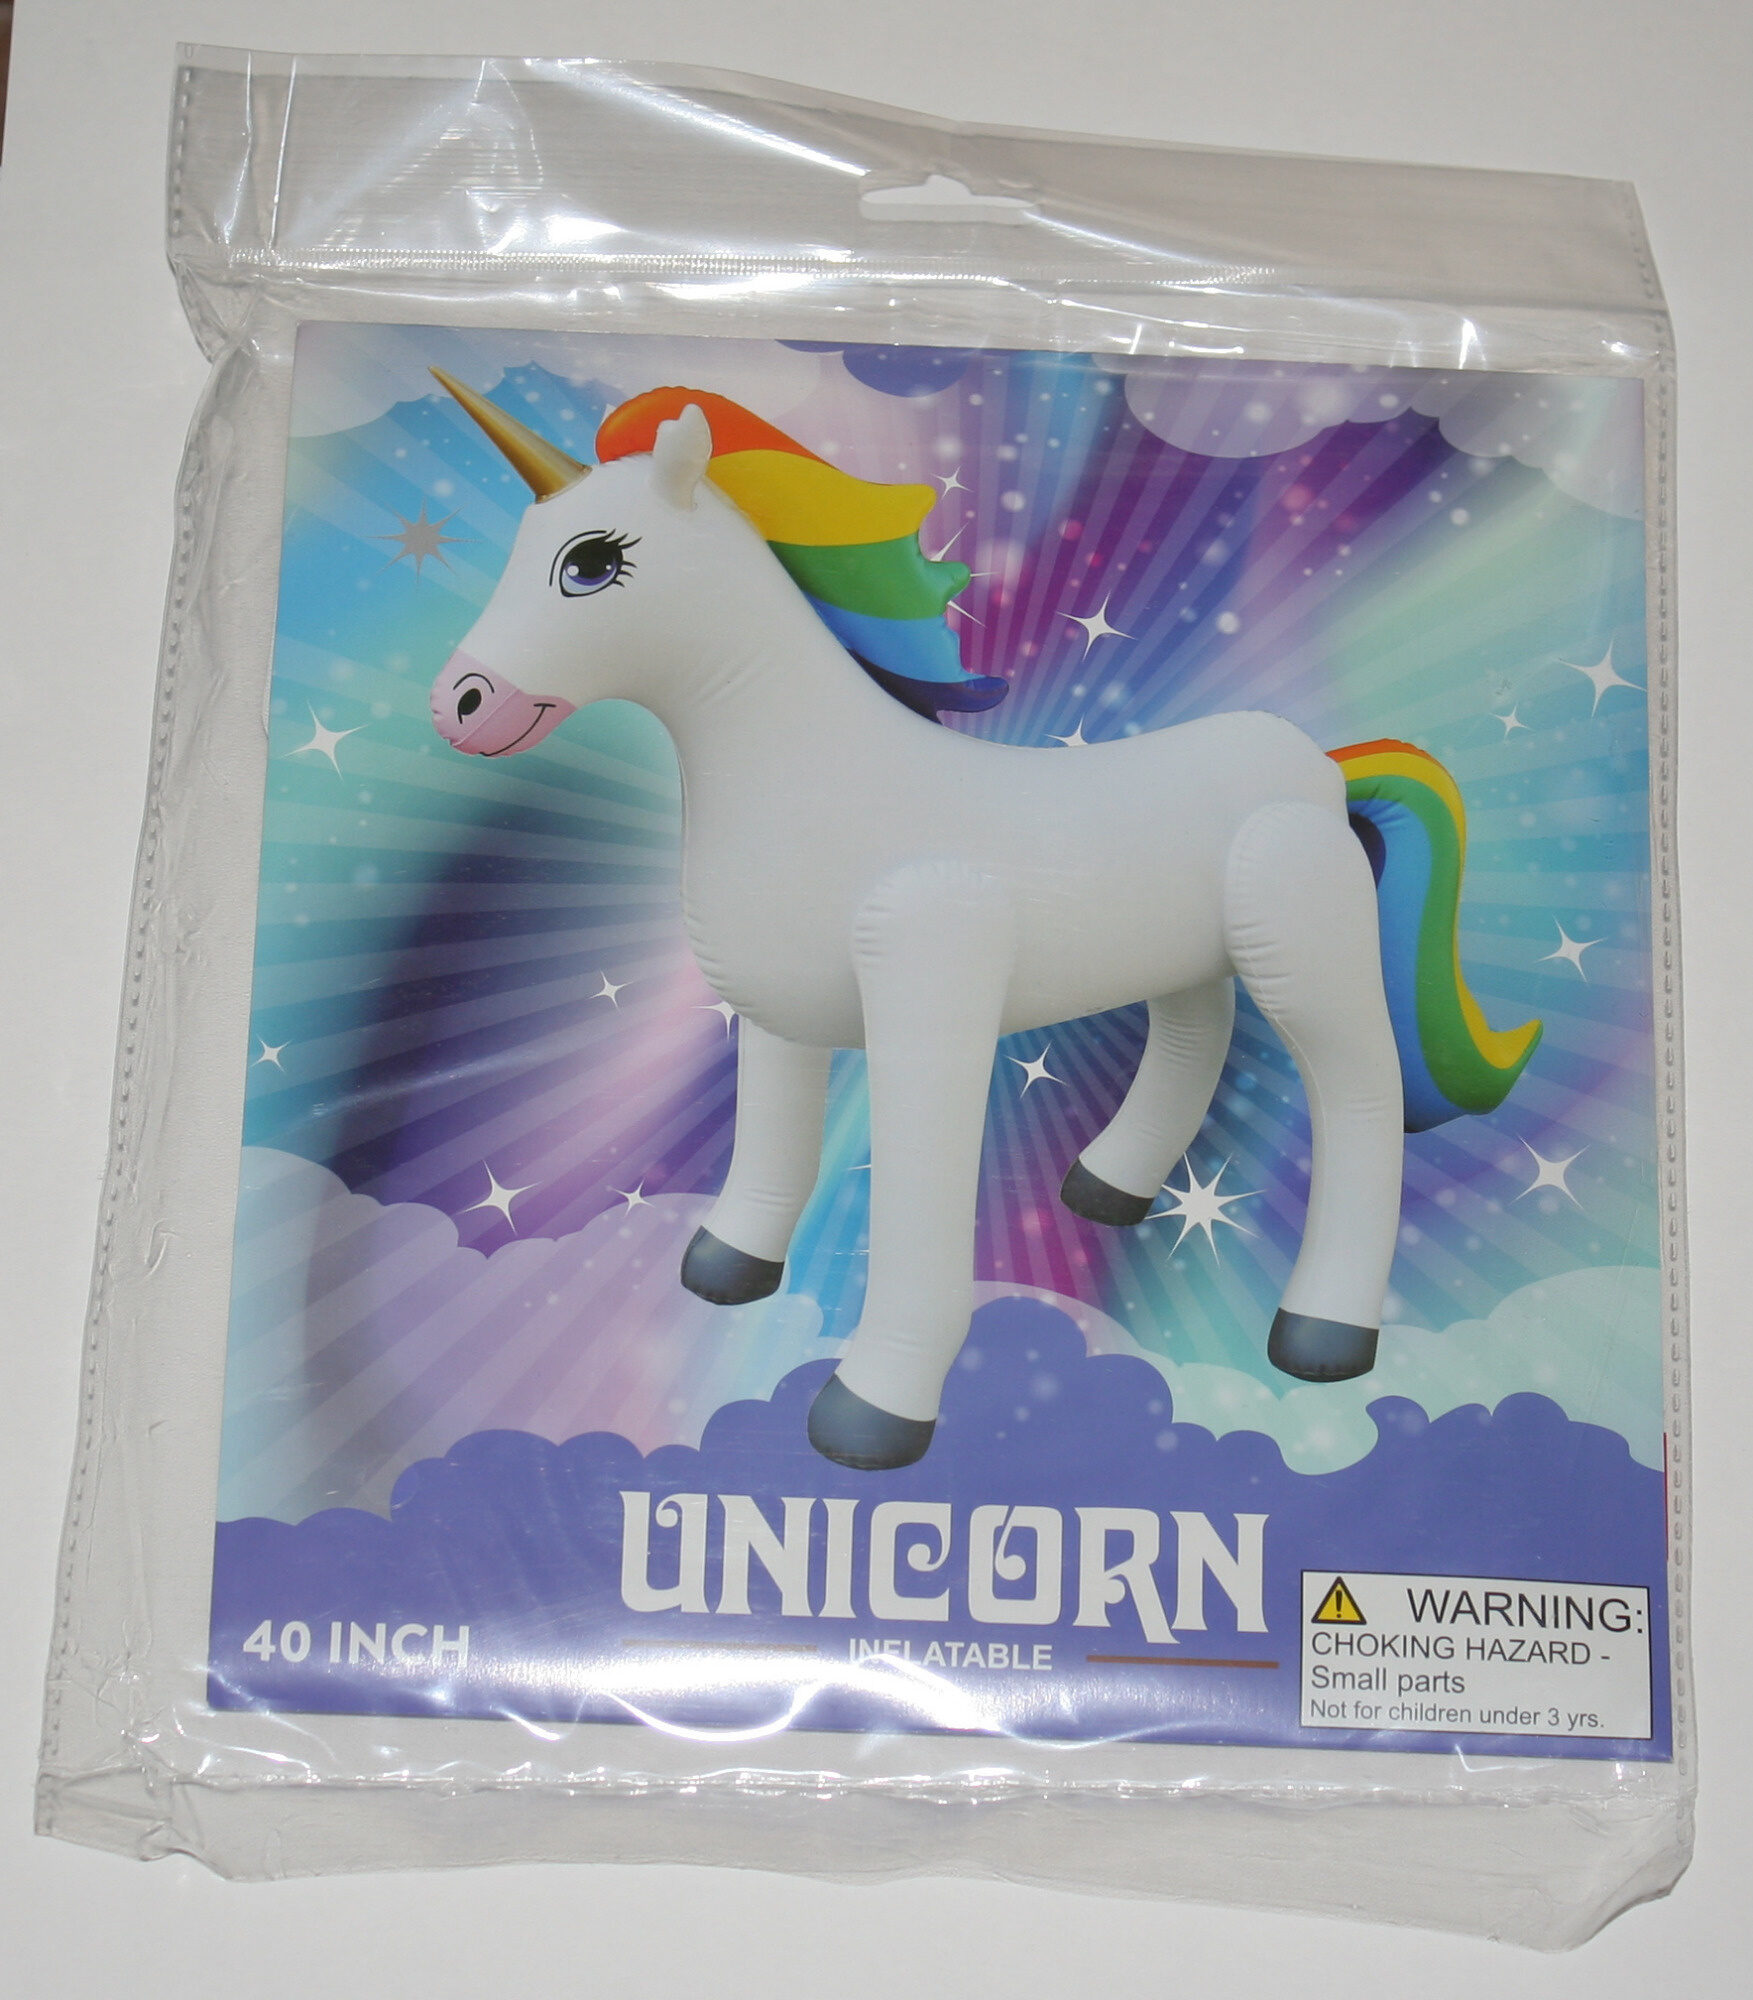 40 inch inflatable unicorn - Product - en